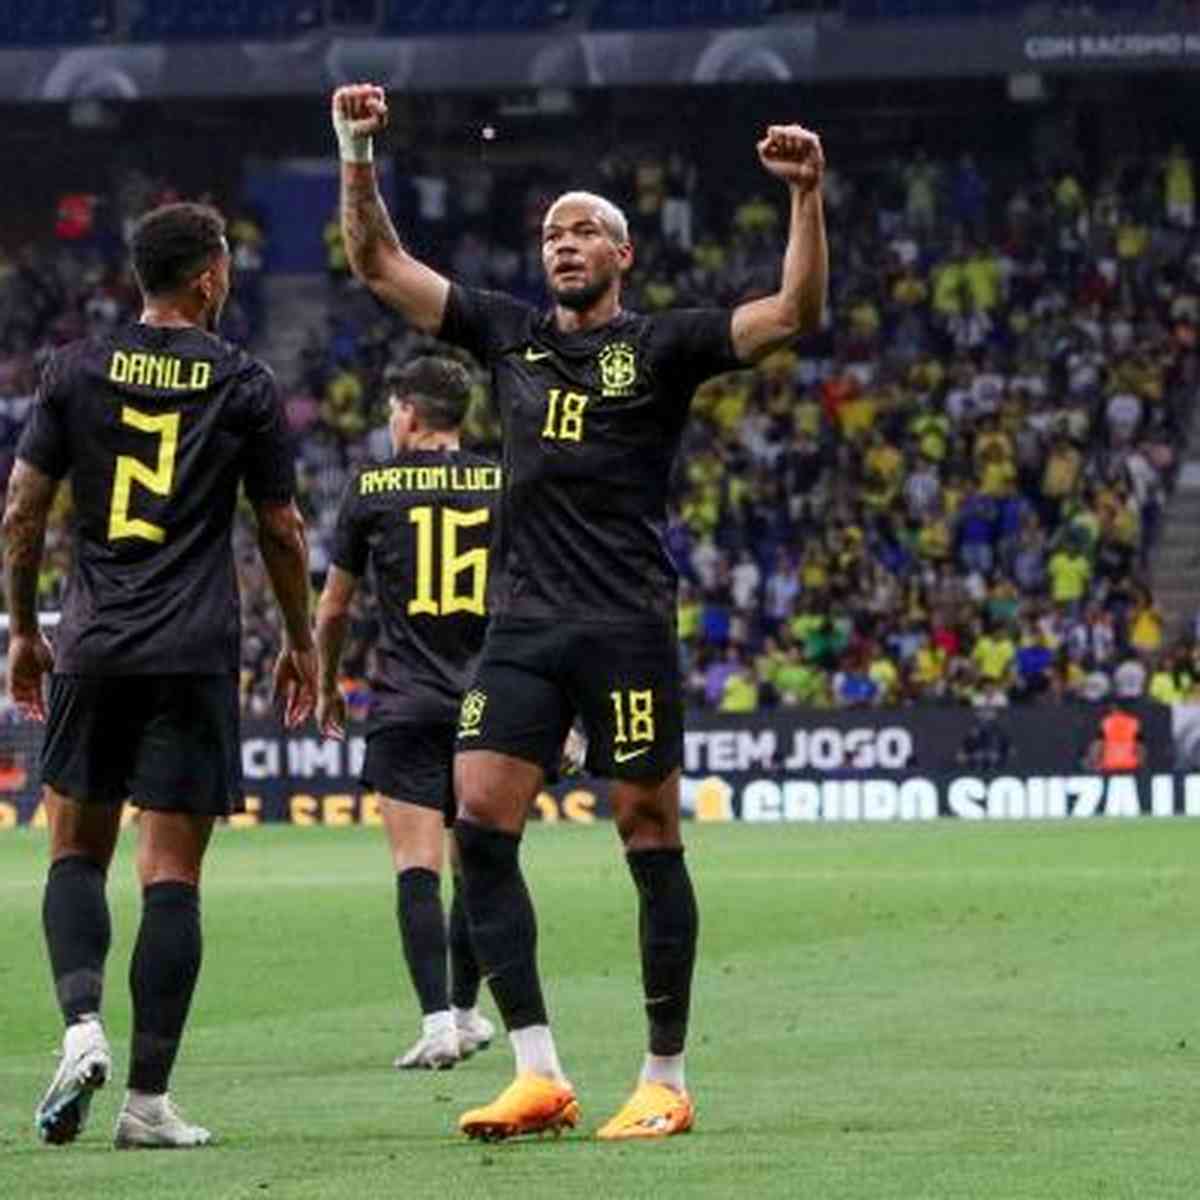 Em jogo com seis gols, Brasil perde para Senegal no último amistoso antes  das Eliminatórias - Seleção Brasileira - Br - Futboo.com